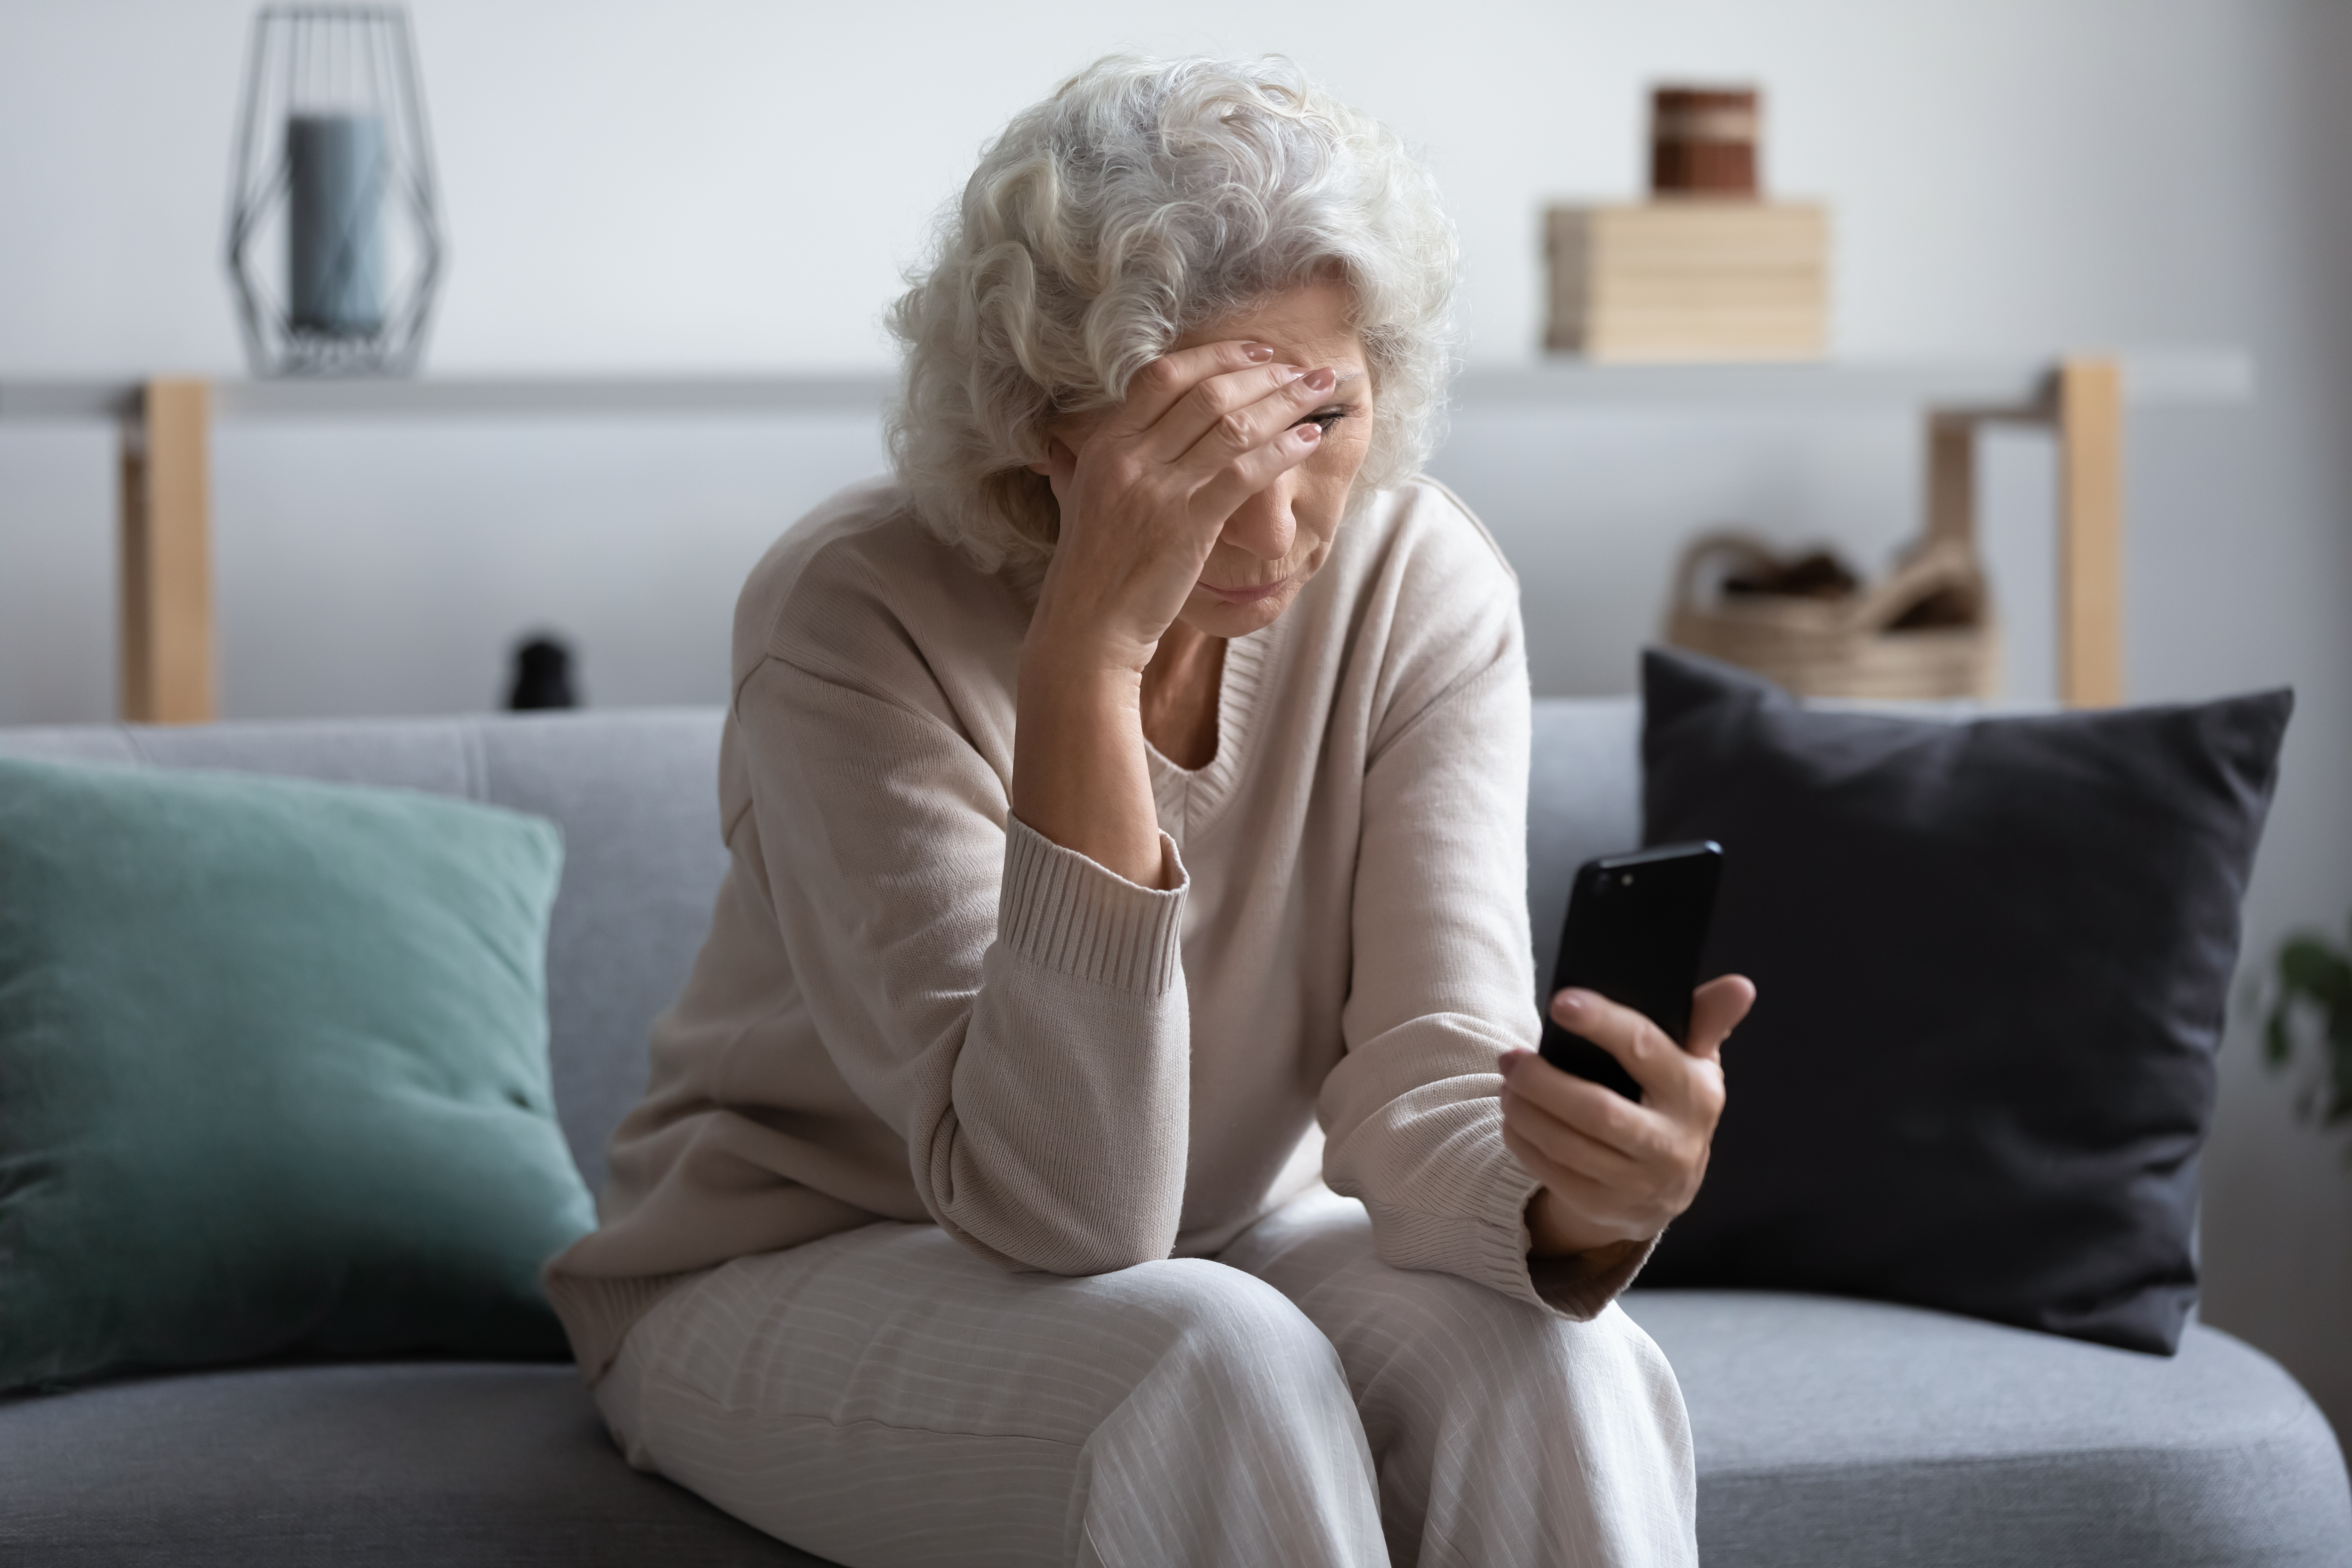 Une femme à l'air stressé alors qu'elle est au téléphone | Source : Shutterstock